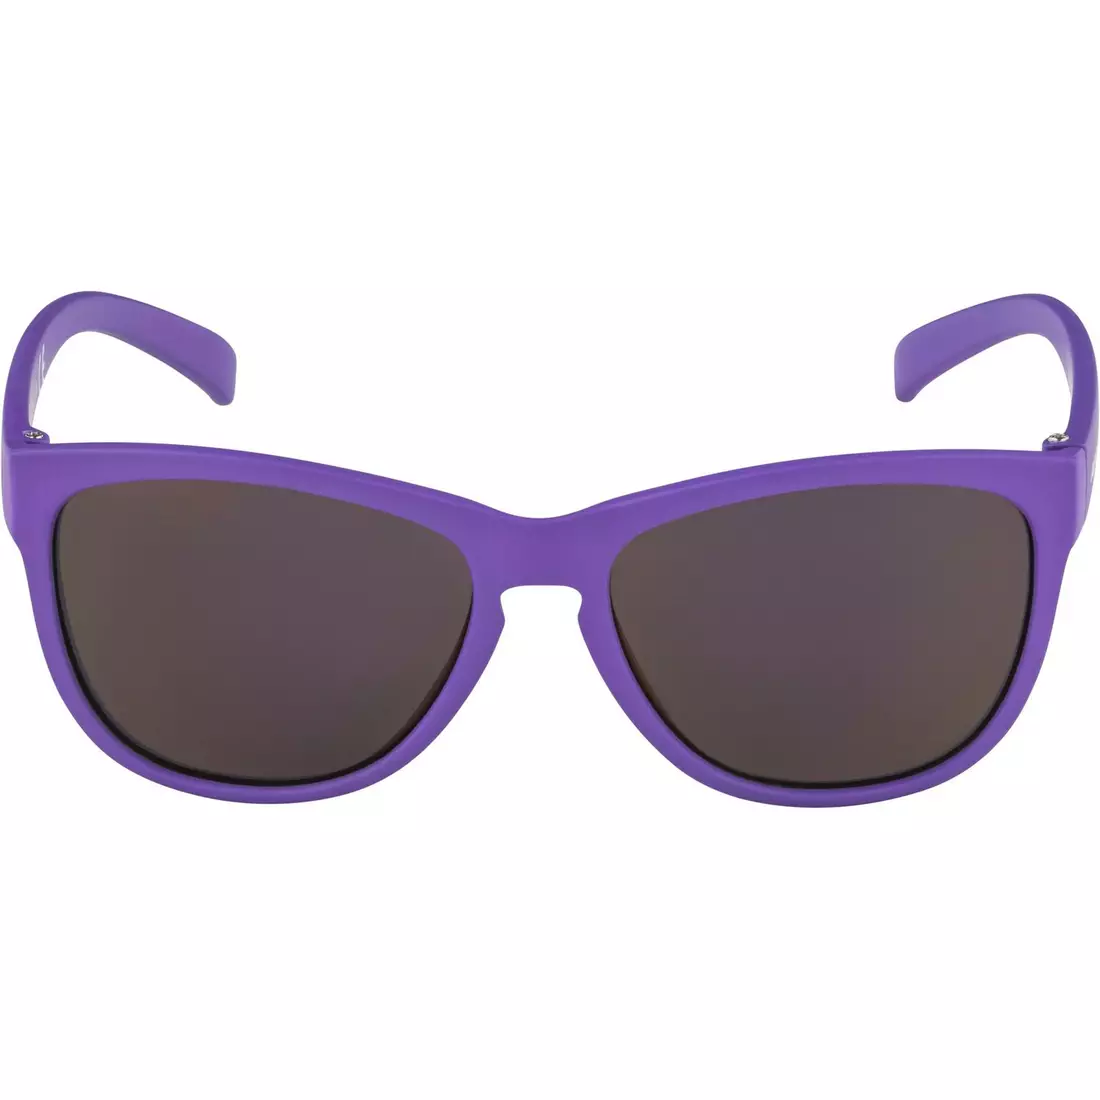 ALPINA JUNIOR LUZY cyklistické/športové okuliare, purple matt